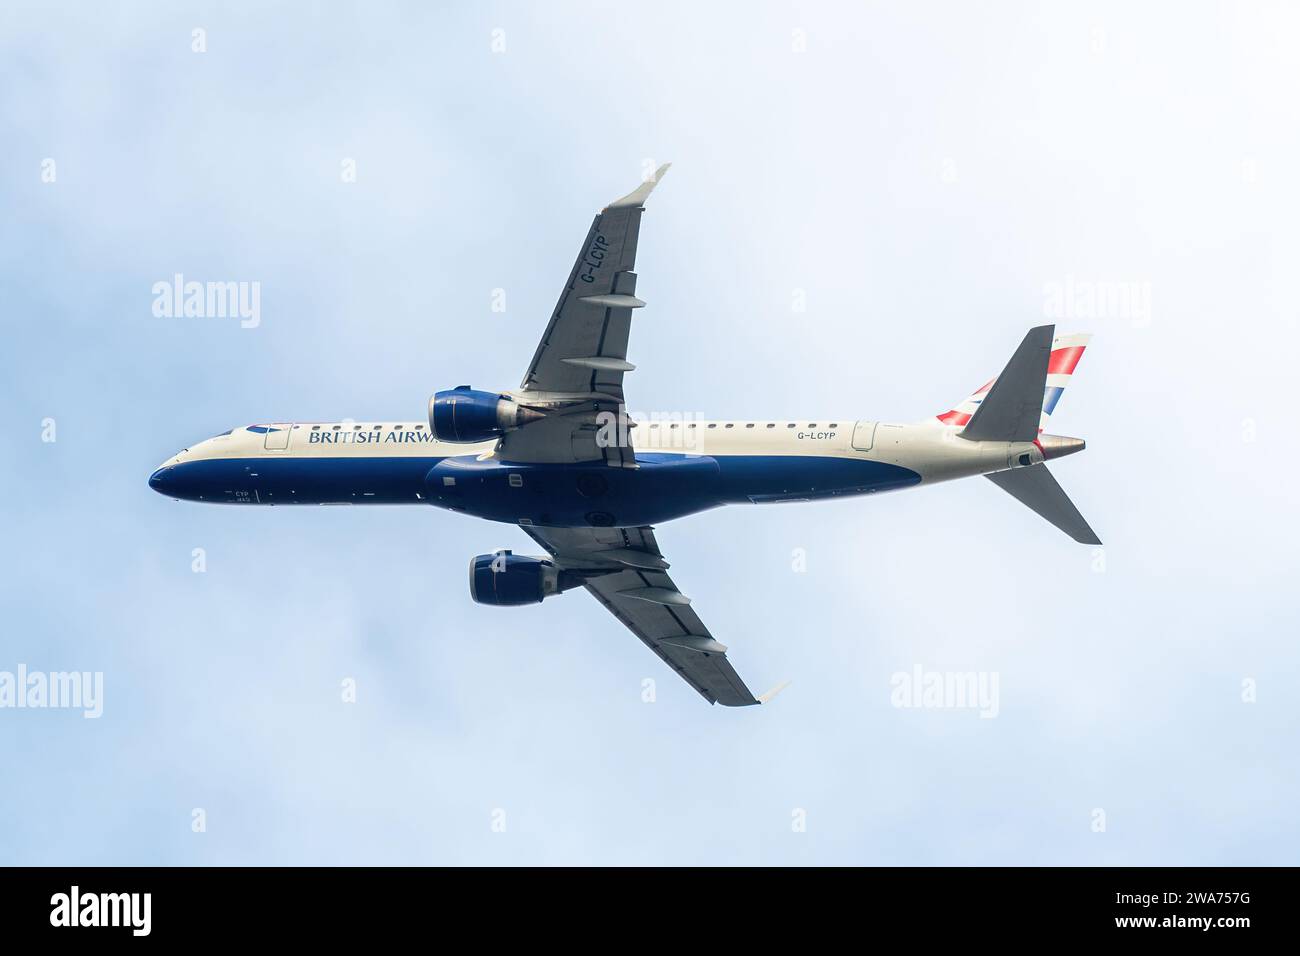 British Airways avion avion avion avion avion jet avion avion de ligne G-LCYP en vol, Angleterre, Royaume-Uni Banque D'Images